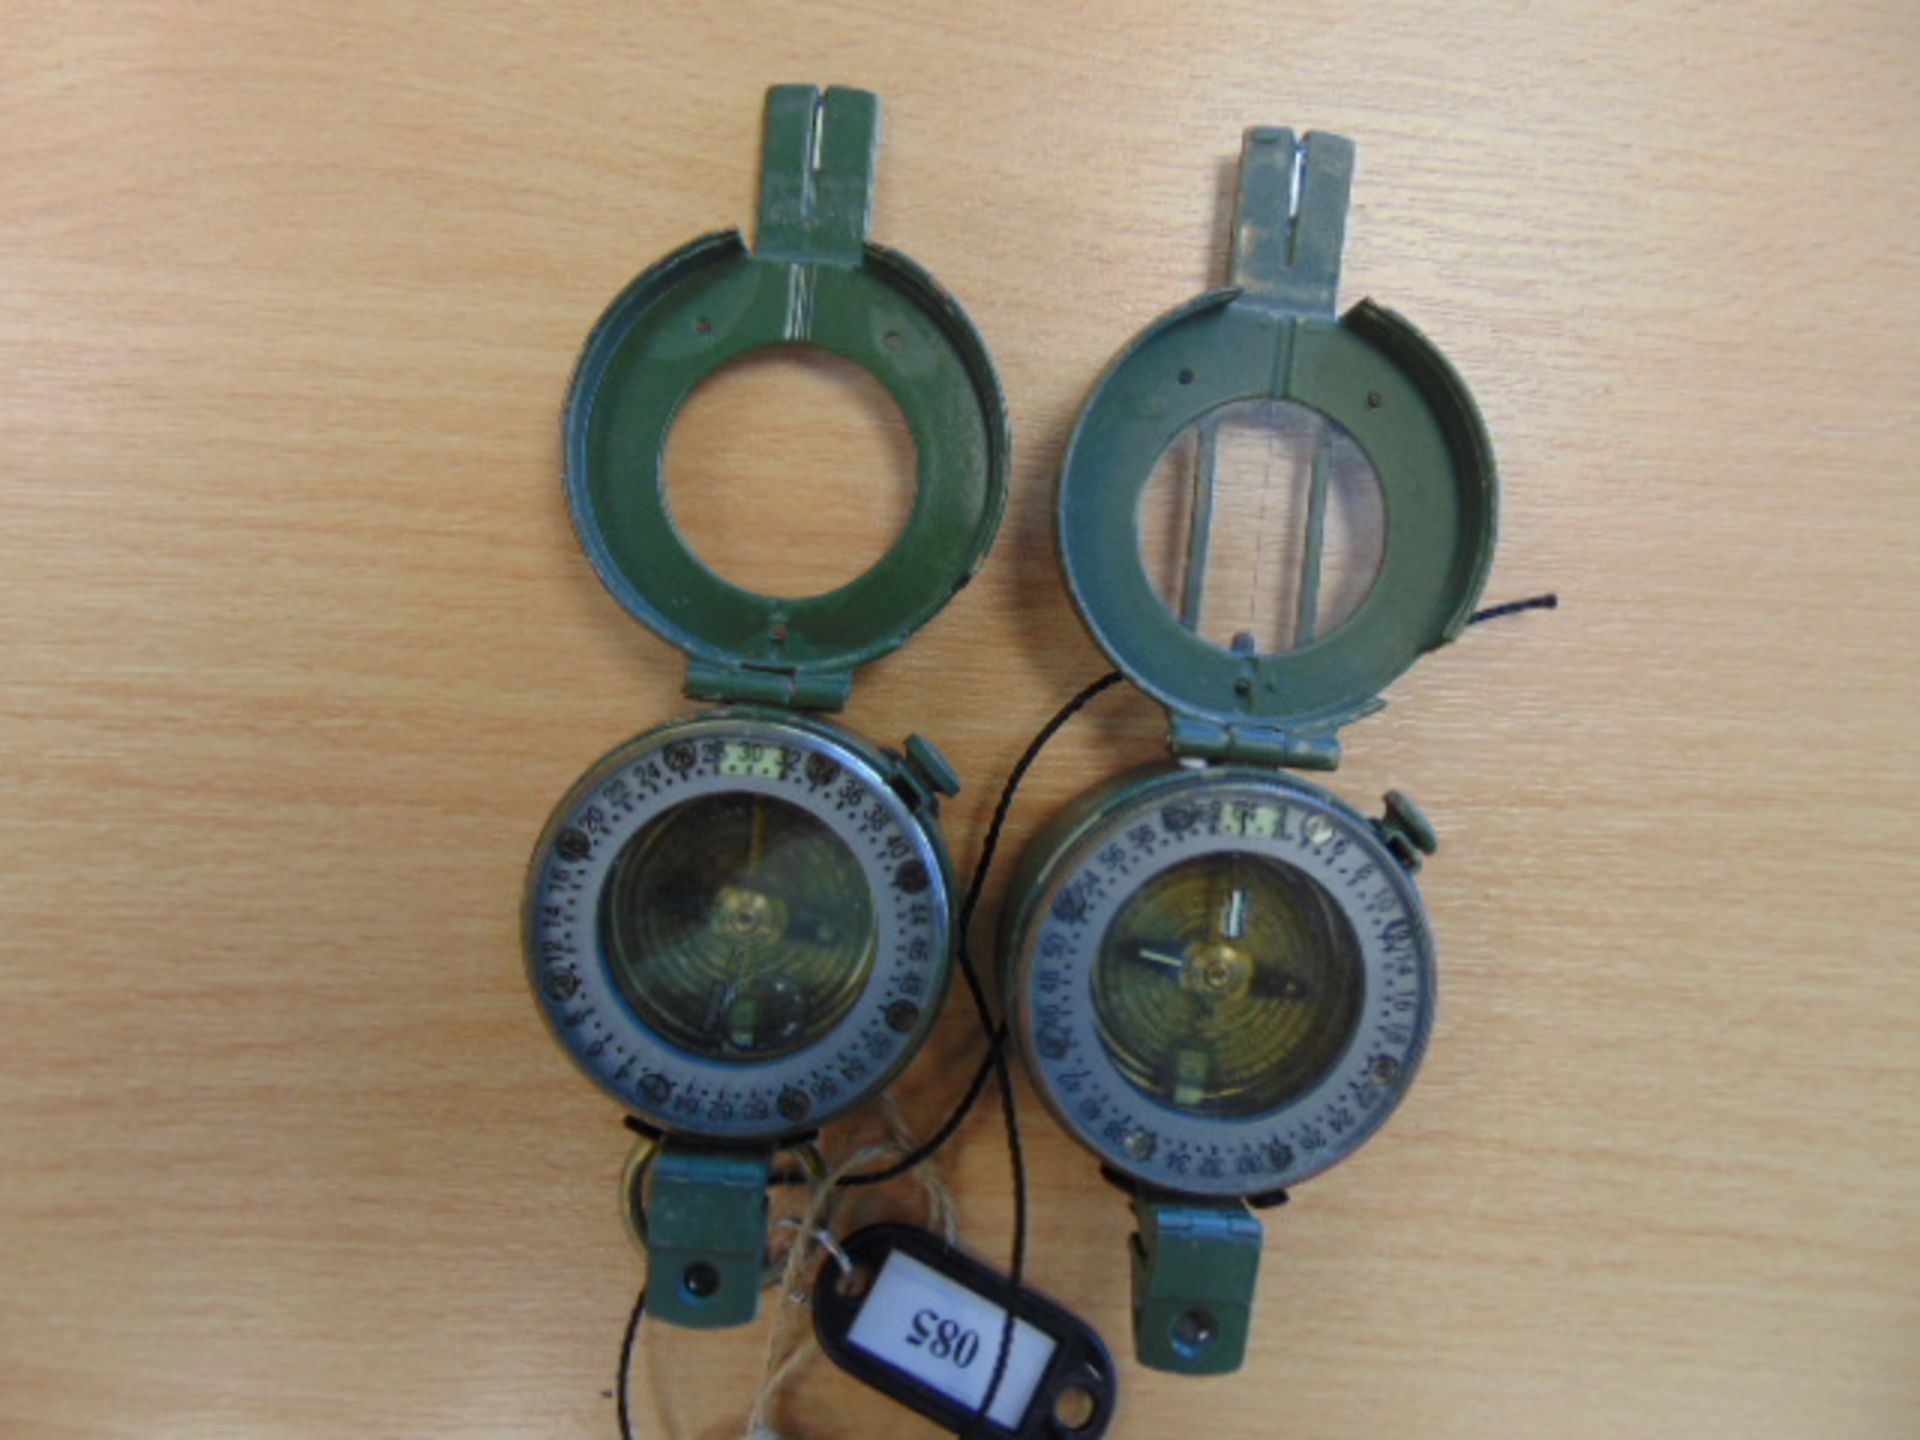 2 x Stanley London British Army Prismatic Compass in Mils, Made in UK - Bild 2 aus 3